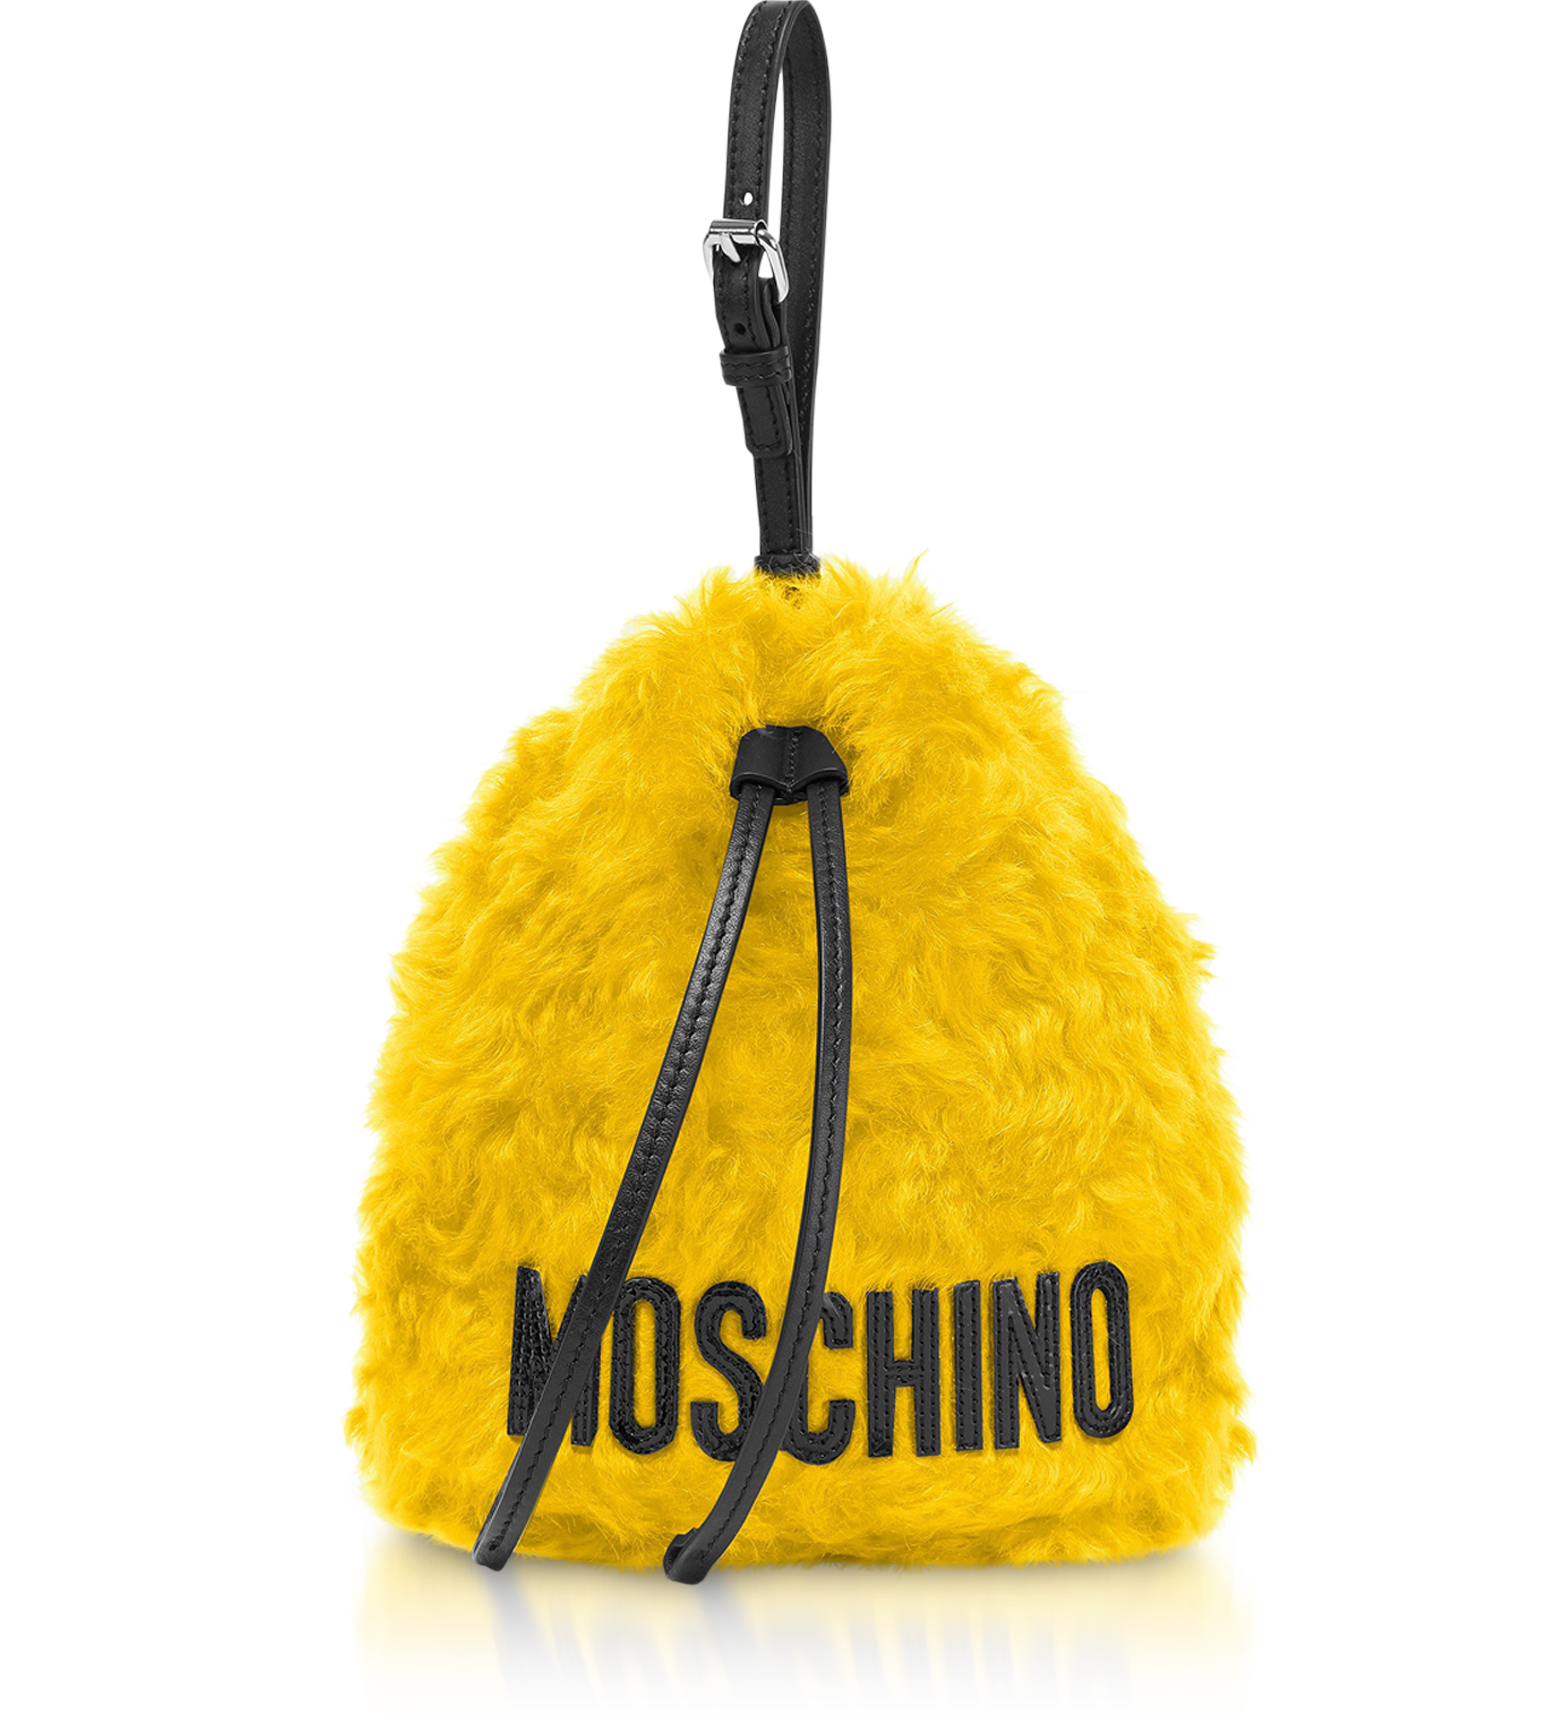 moschino yellow bag